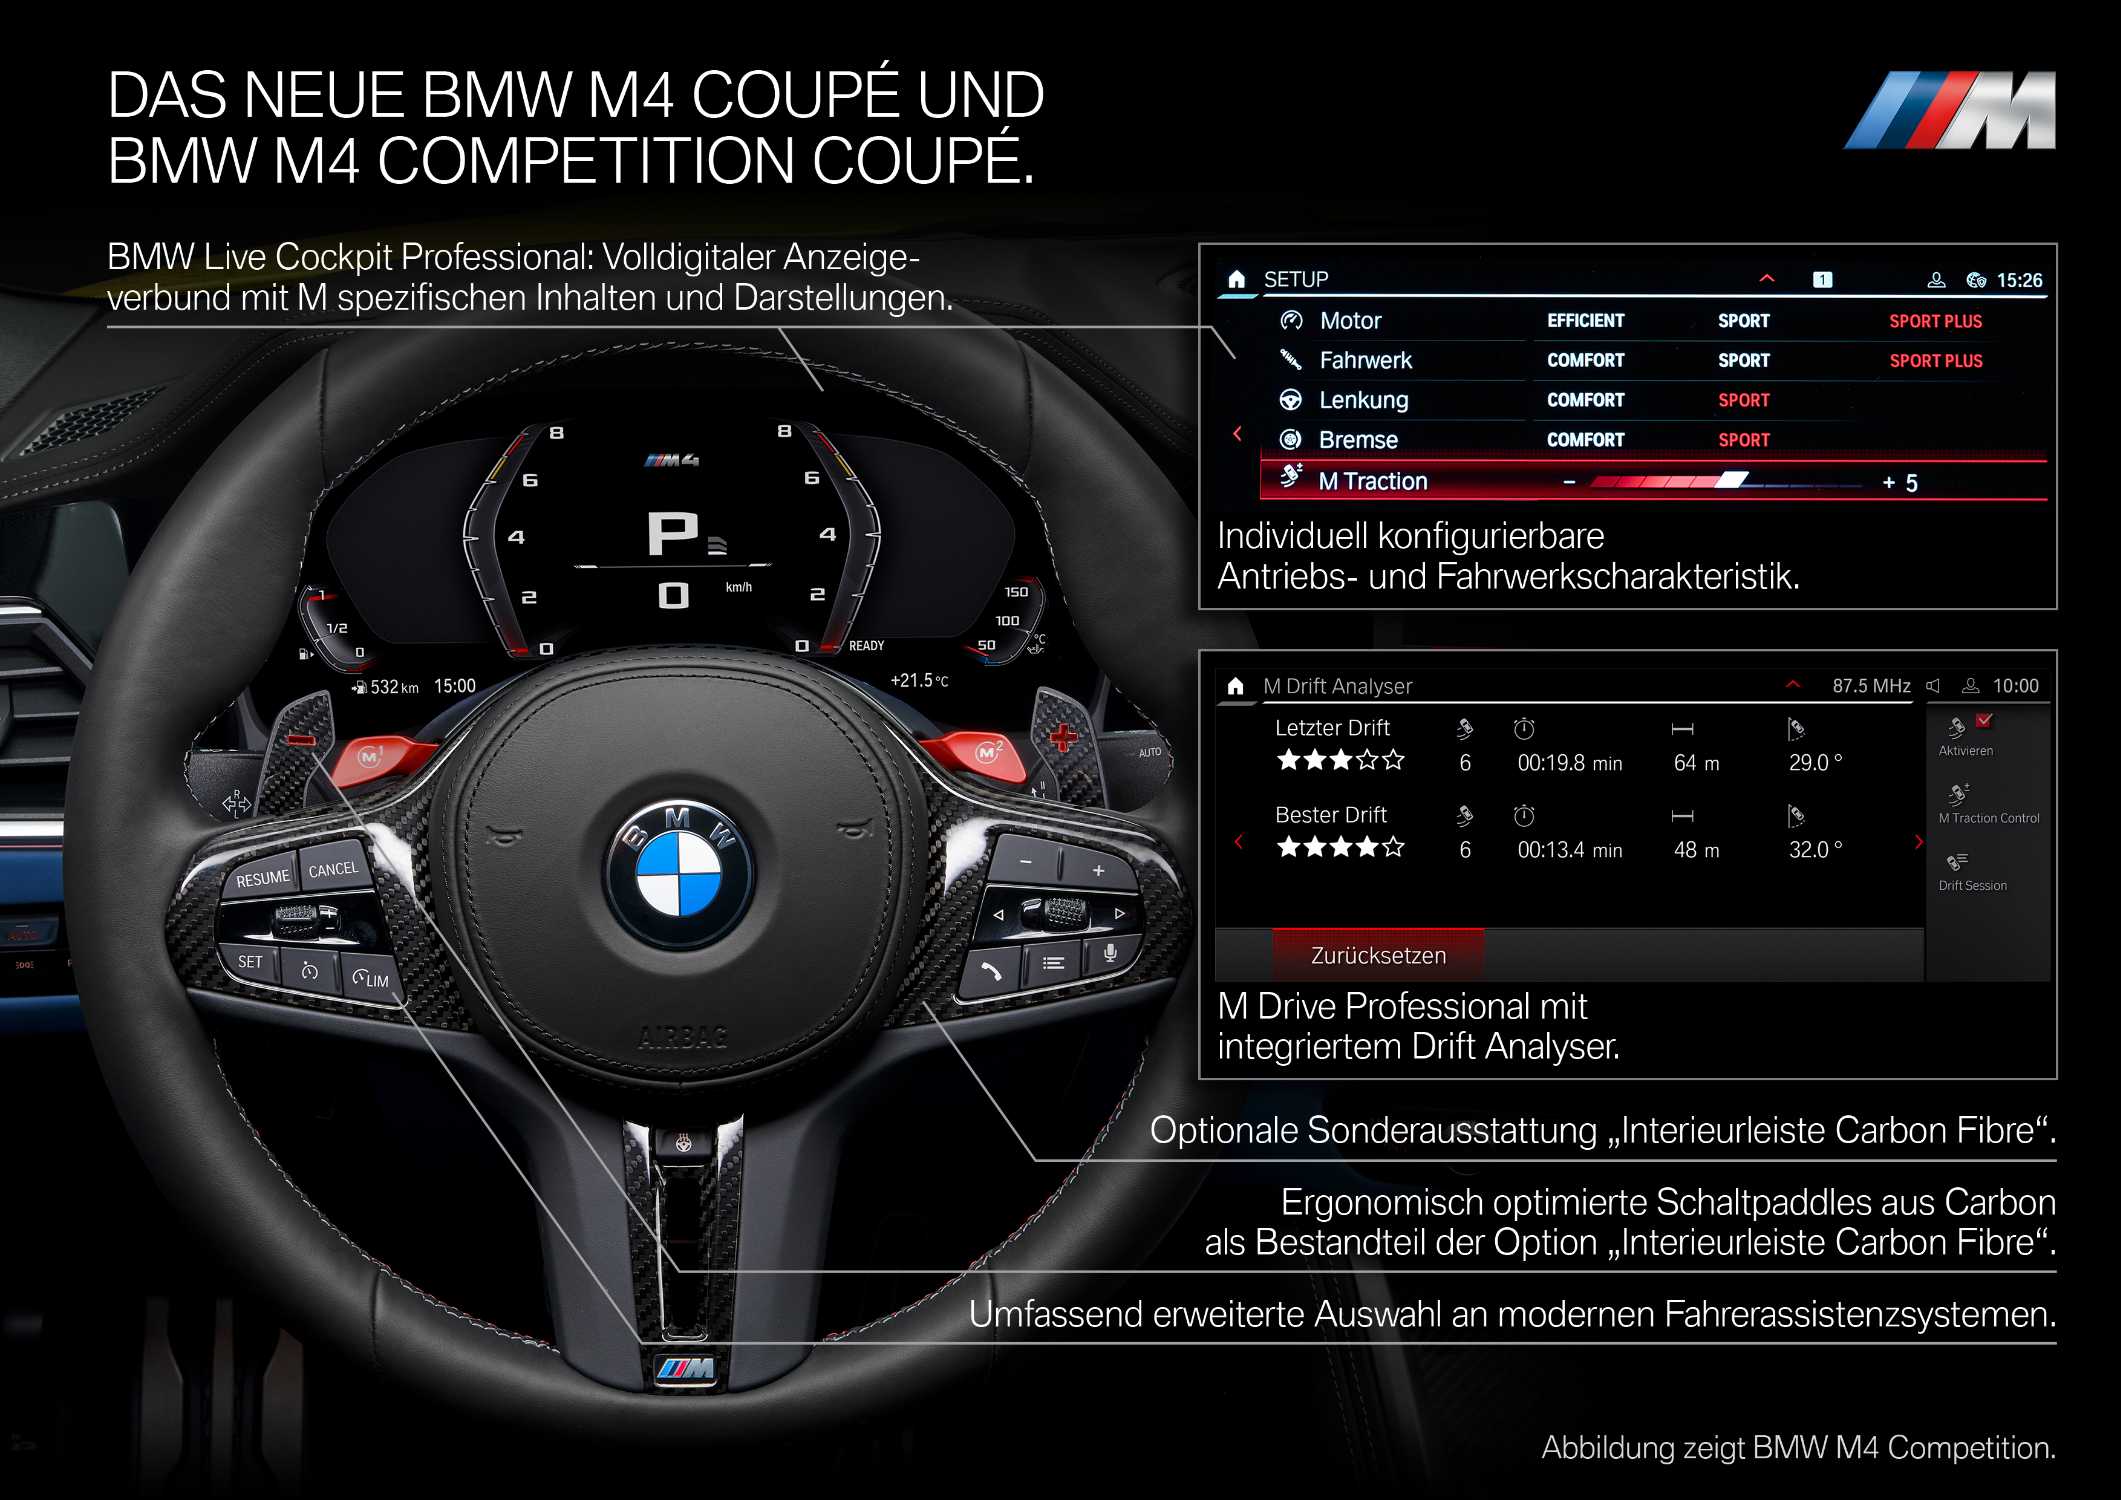 Das neue BMW M4 Competition Coupé (09/2020).